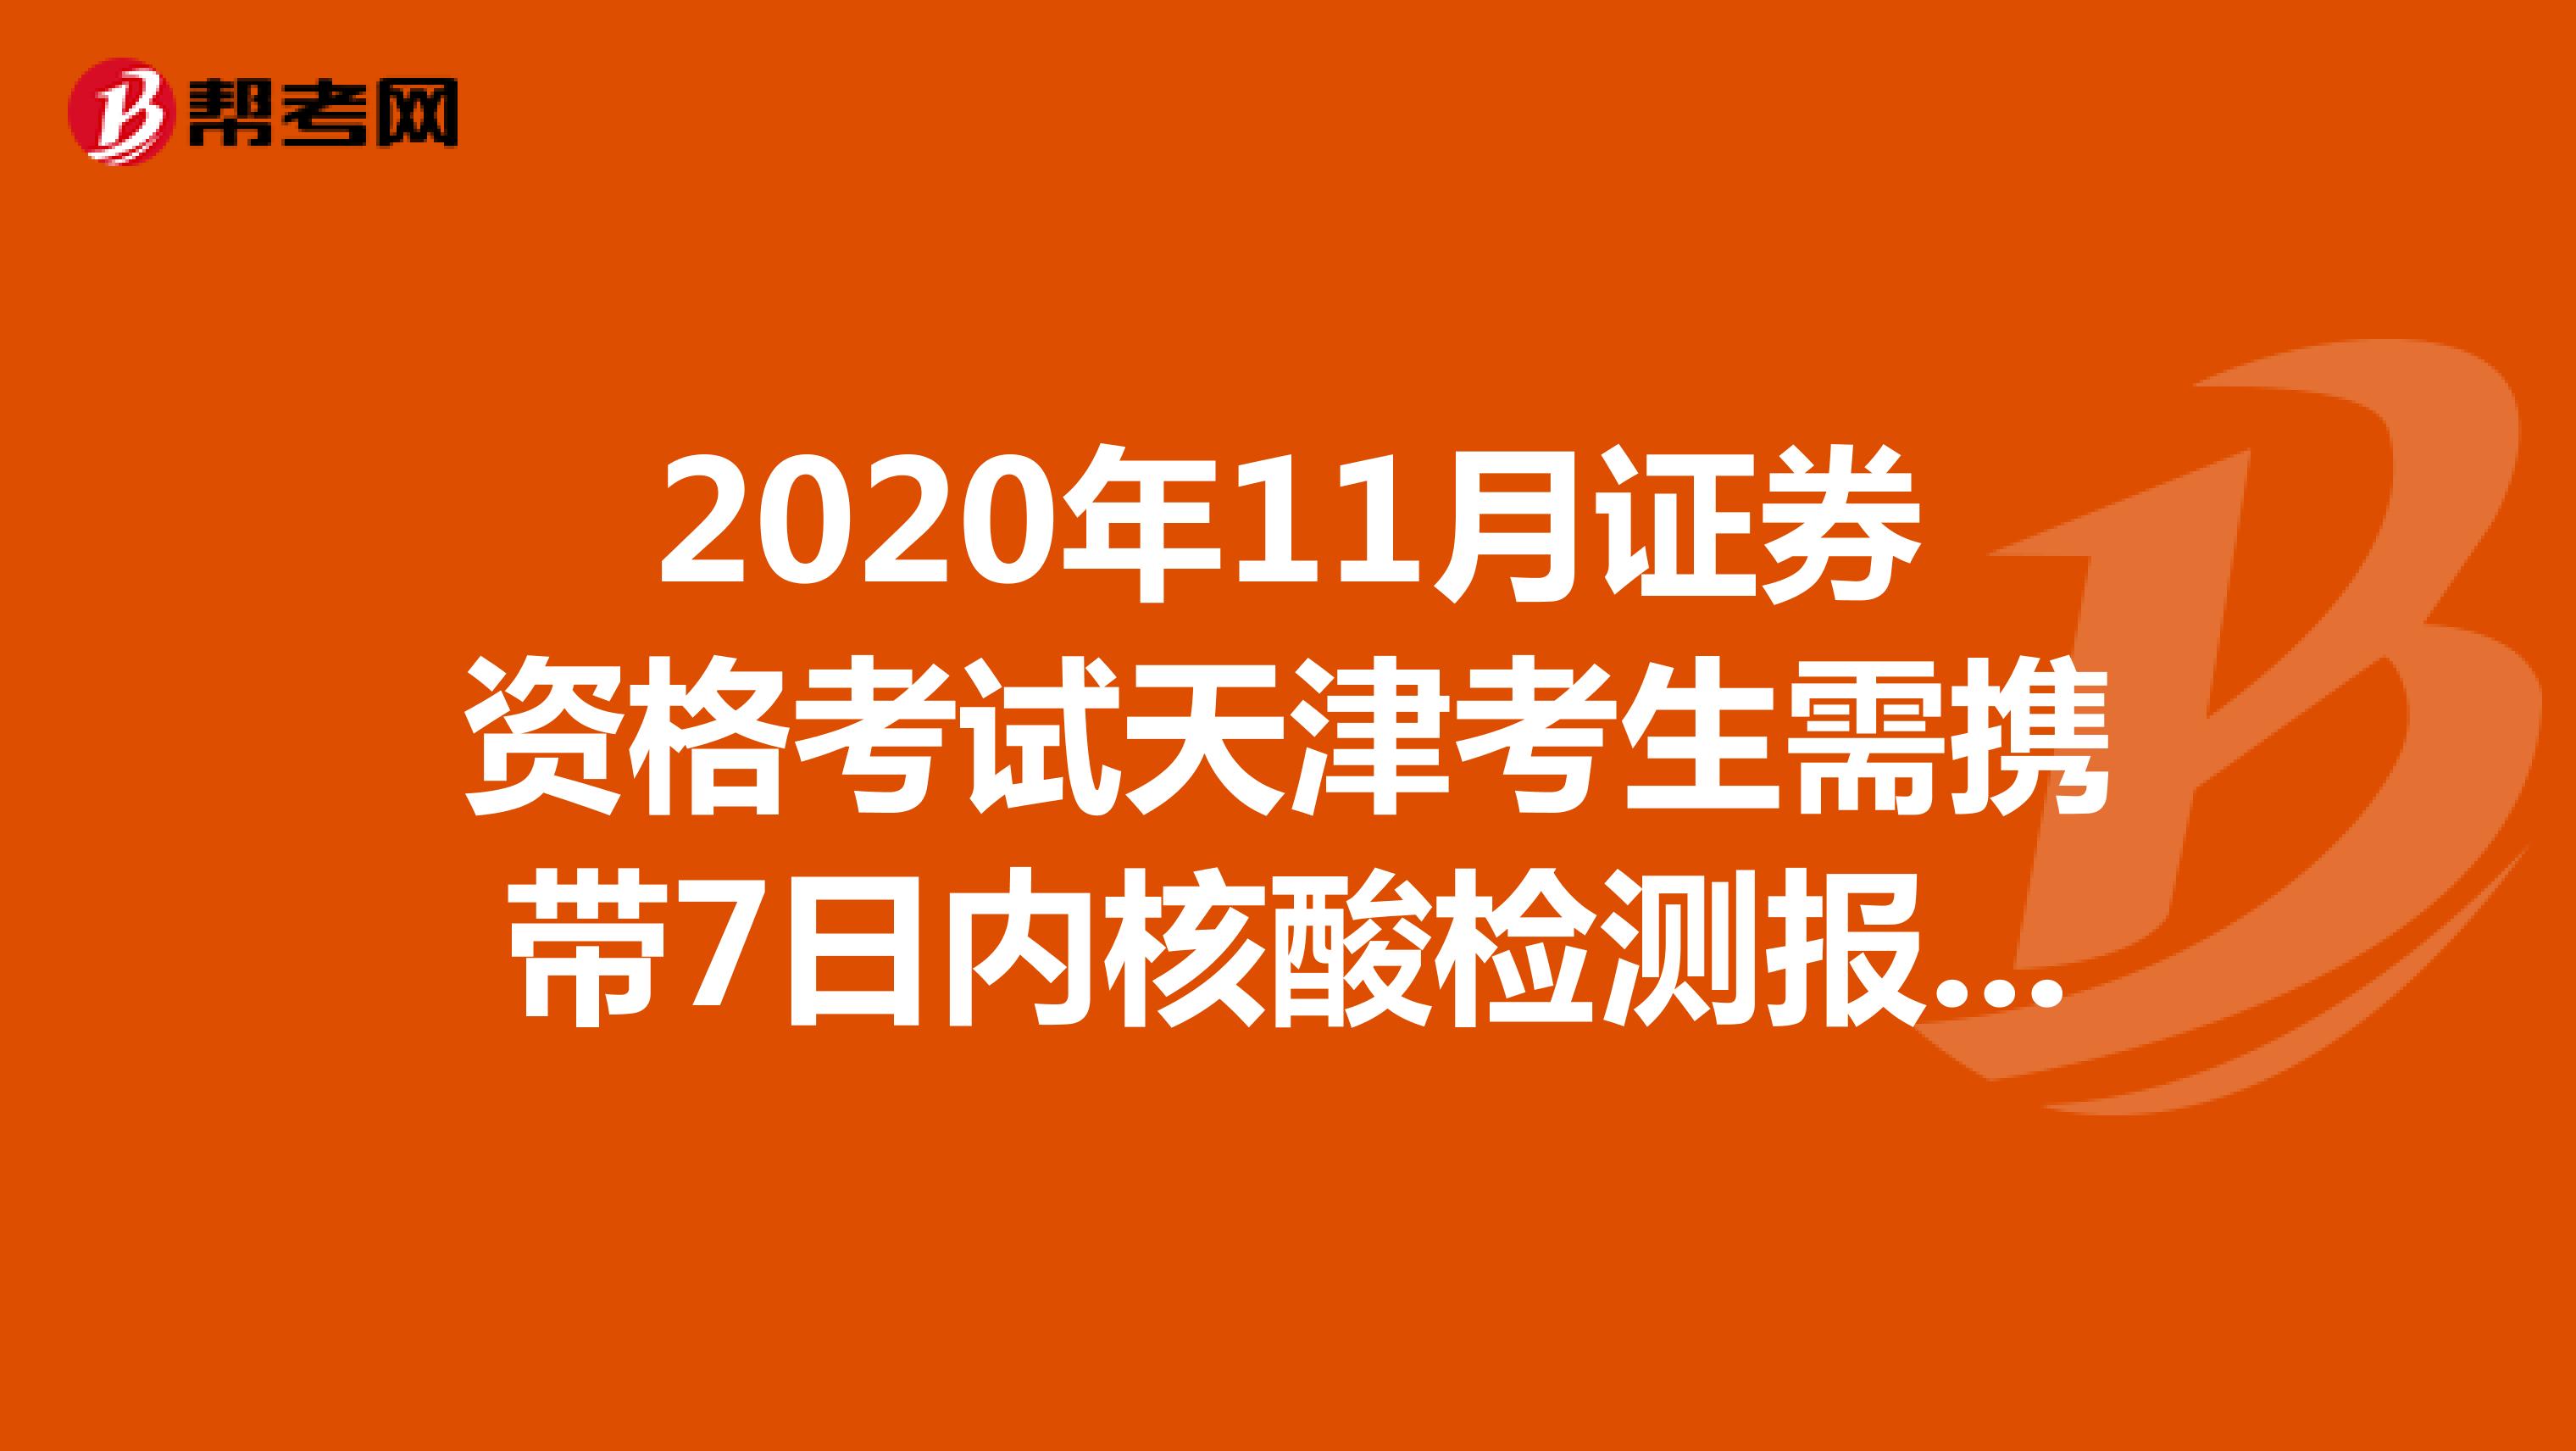 2020年11月证券资格考试天津考生需携带7日内核酸检测报告！